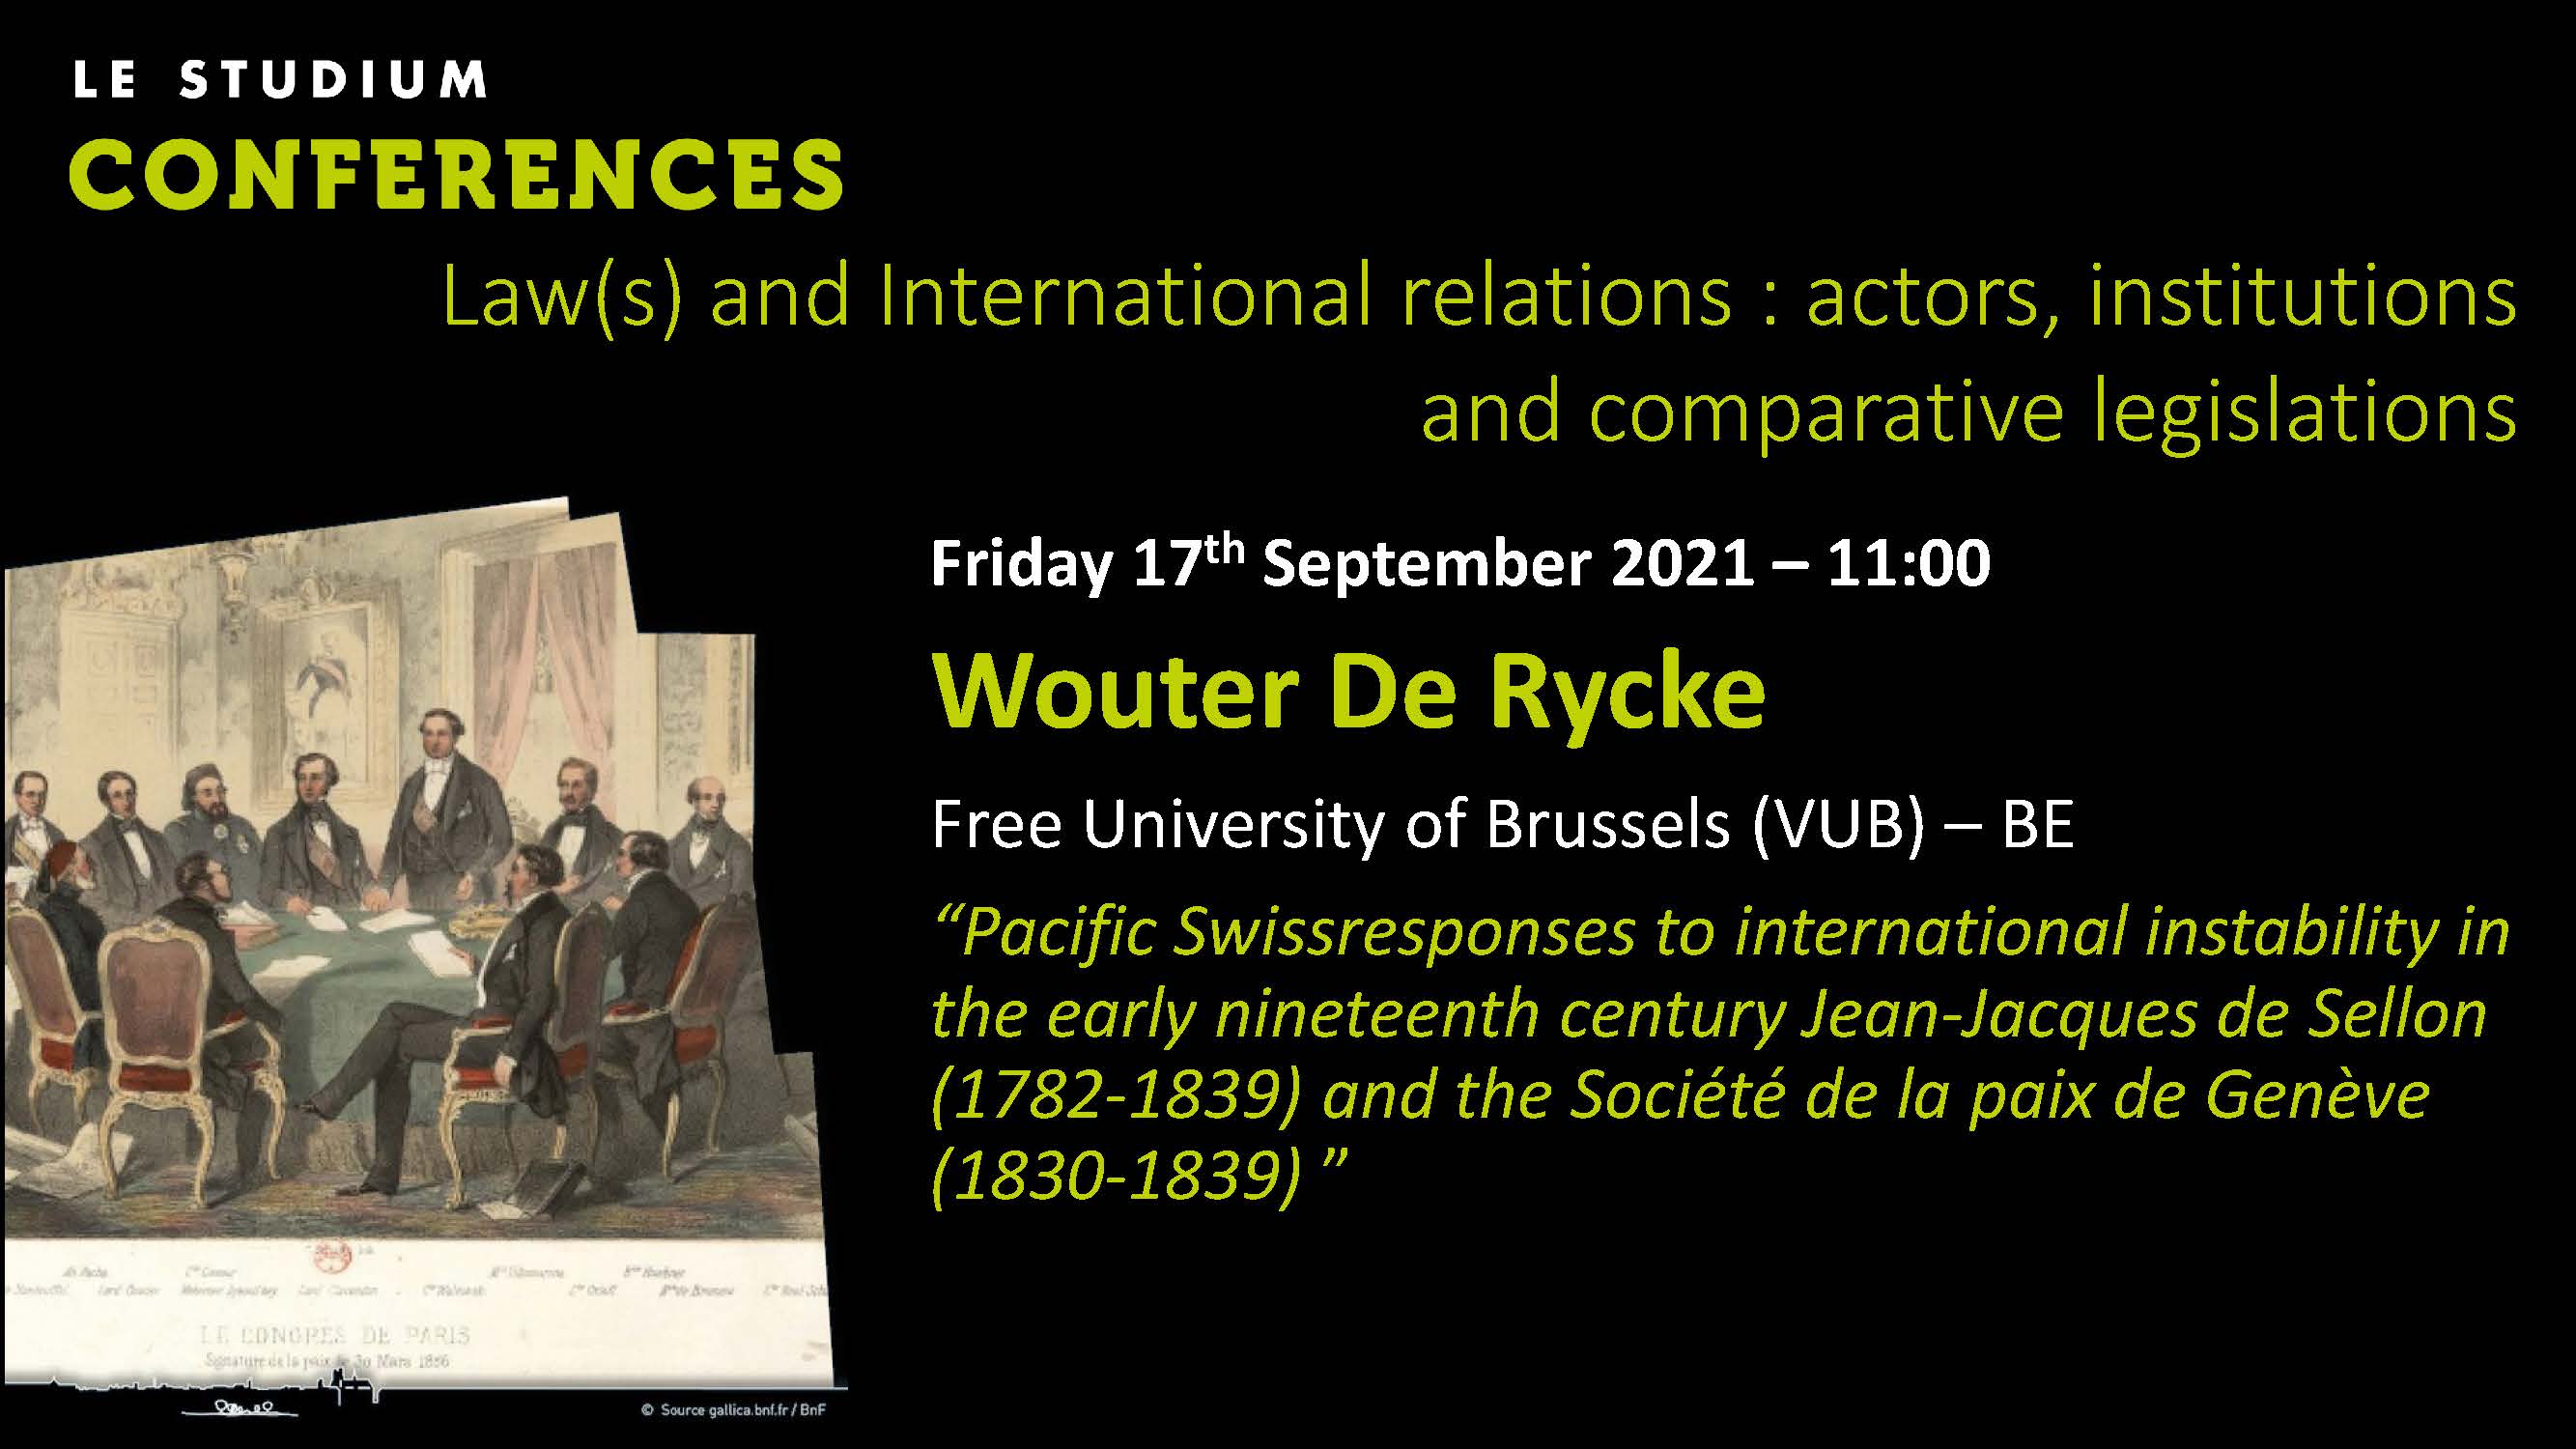 Wouter De Rycke - Pacific Swissresponses to international instability in the early nineteenth century Jean-Jacques de Sellon (1782-1839) and the Société de la paix de Genève (1830-1839)